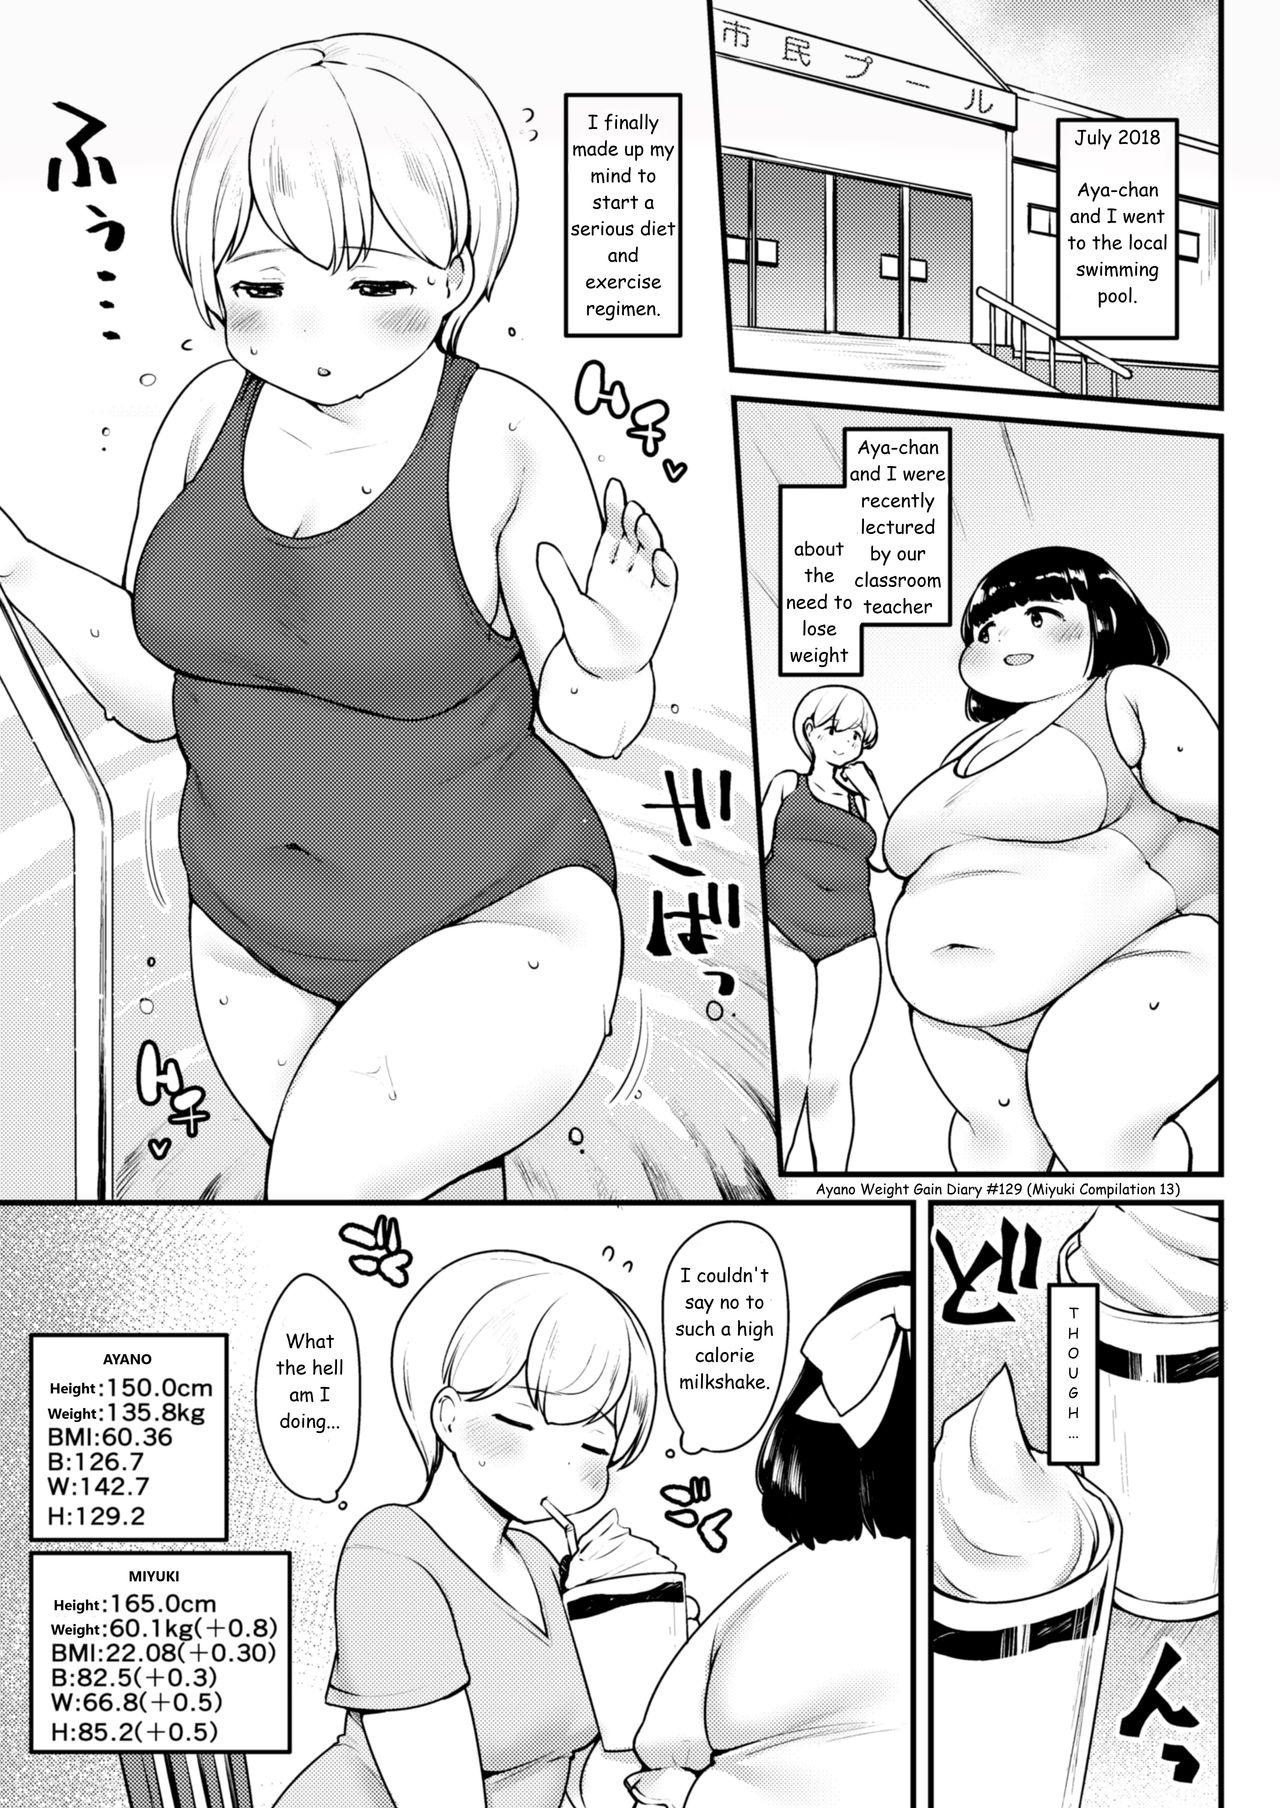 Ayano's Weight Gain Diary 128